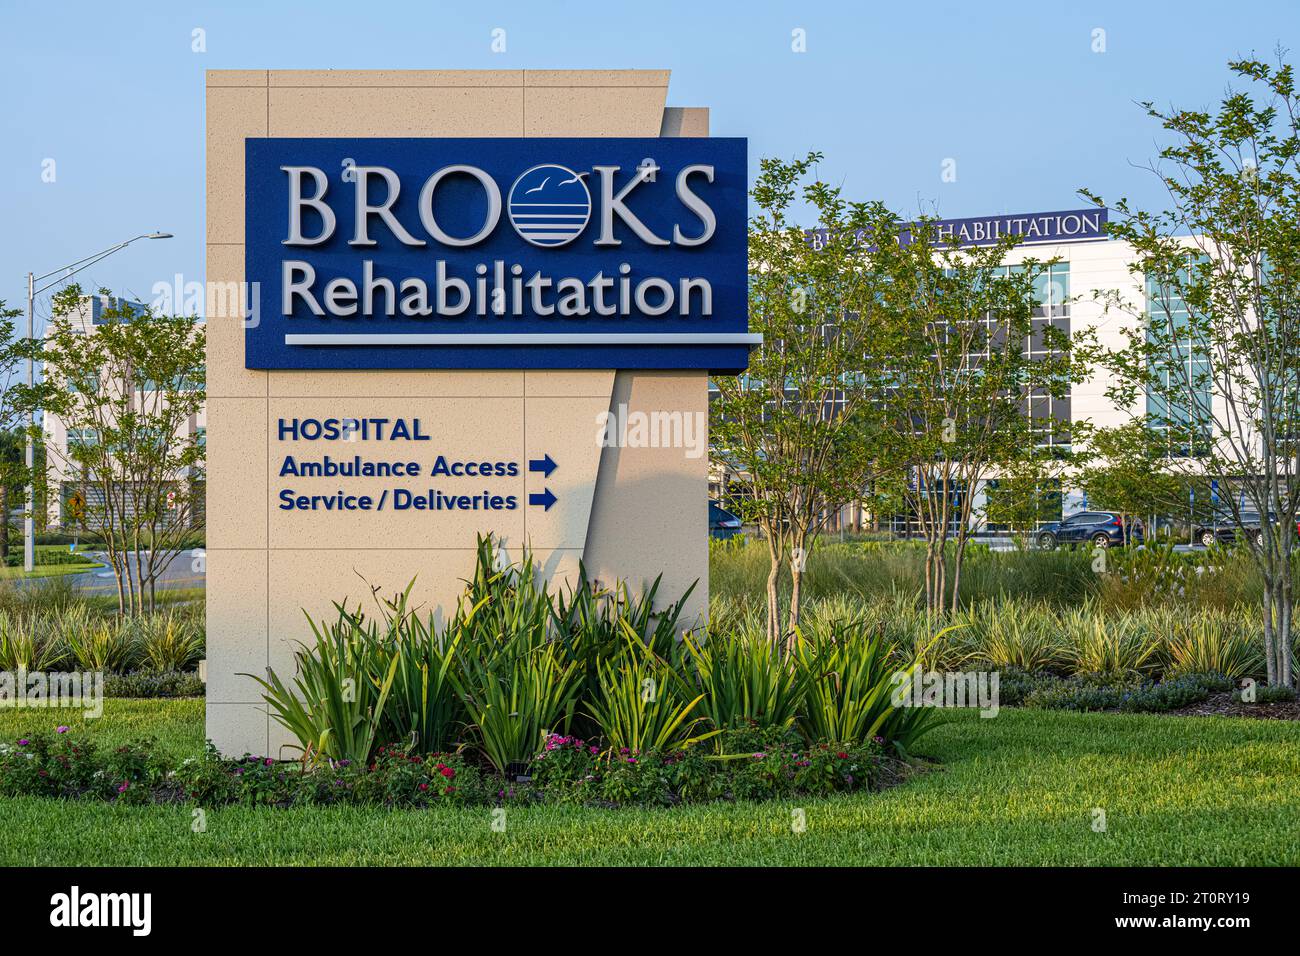 Rehabilitación de Brooks (que ofrece terapia física, ocupacional y del habla) en Bartram Park en Jacksonville, Florida. (EE.UU.) Foto de stock